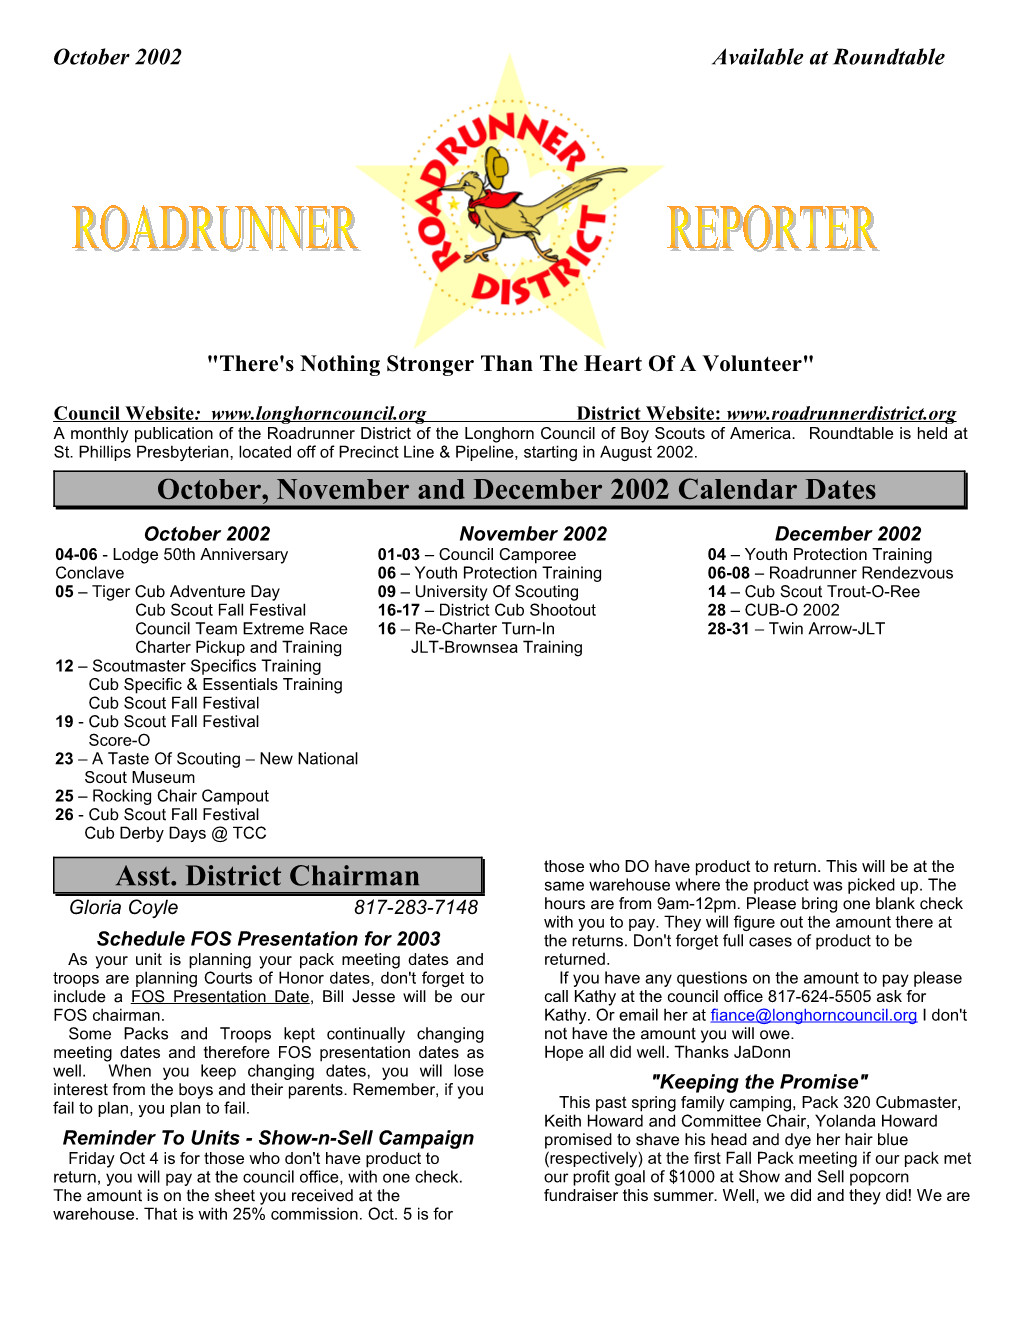 Roadrunner District Newsletter - 12/2001